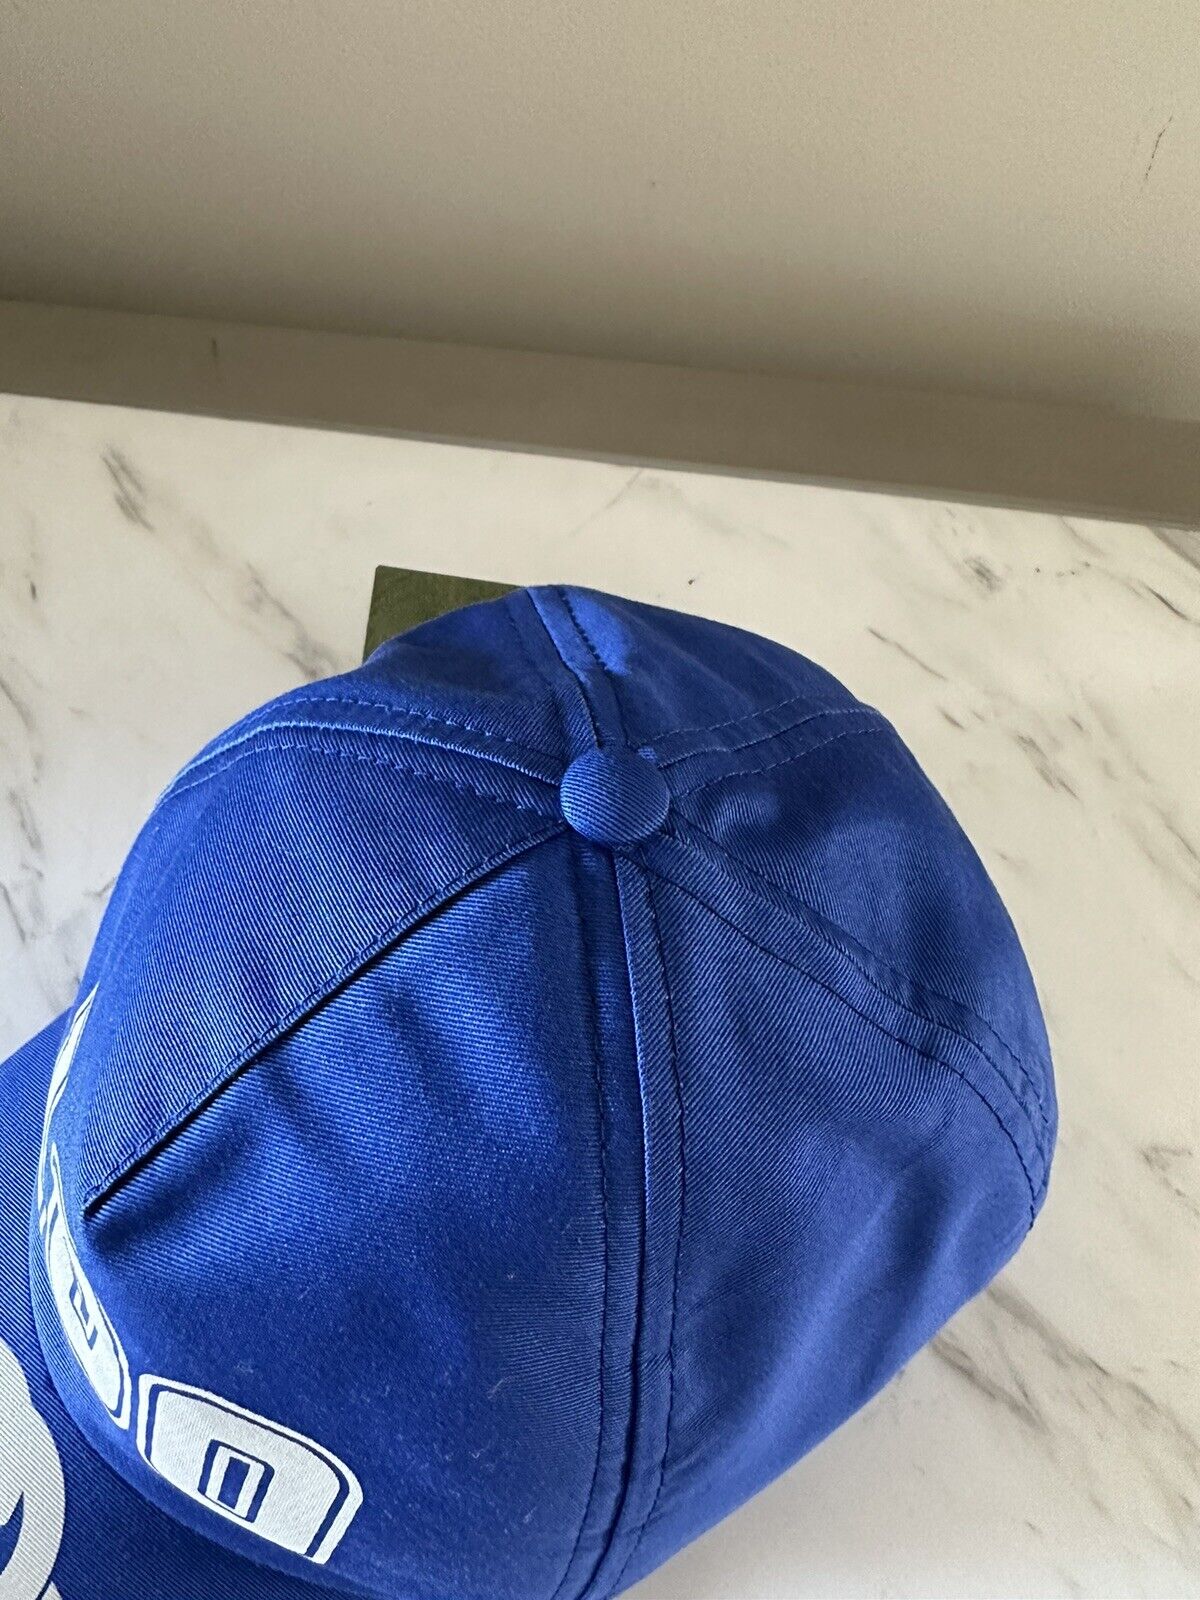 Neu mit Etikett: Gucci Herren-Baseballmütze mit GG-Logo, Königsblau, Größe L